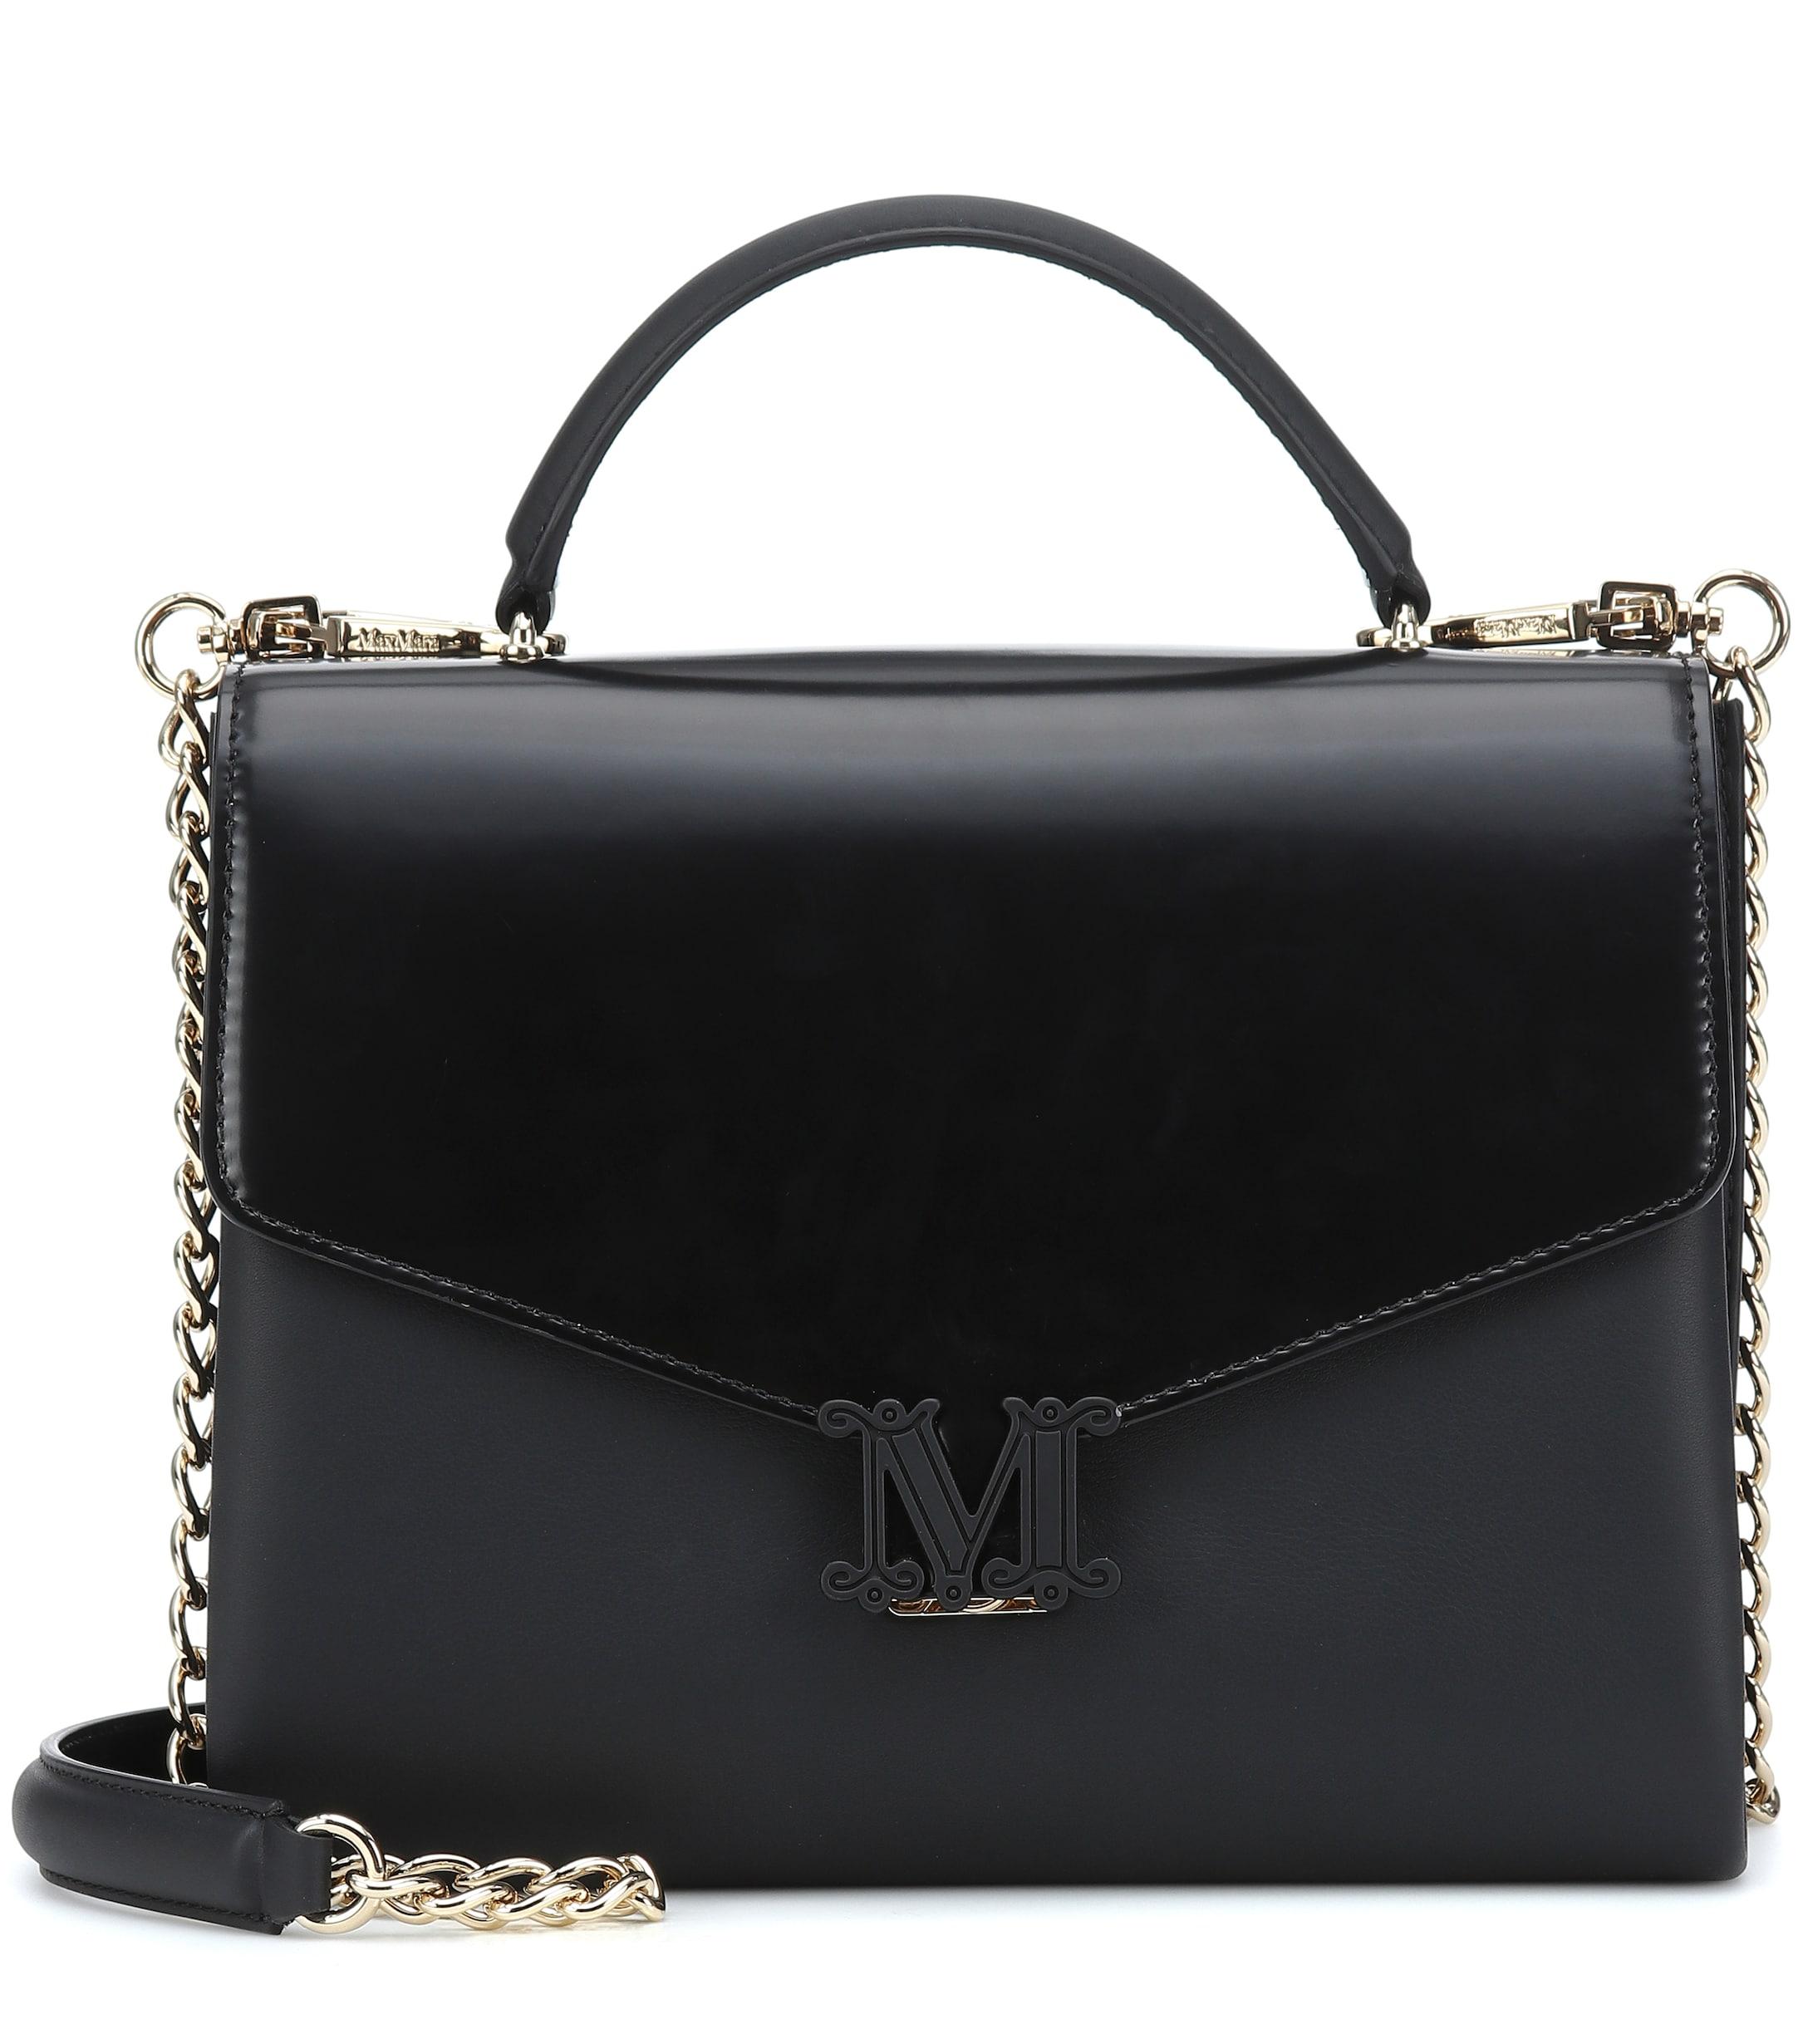 Max Mara Linda Medium Leather Shoulder Bag in Black - Lyst